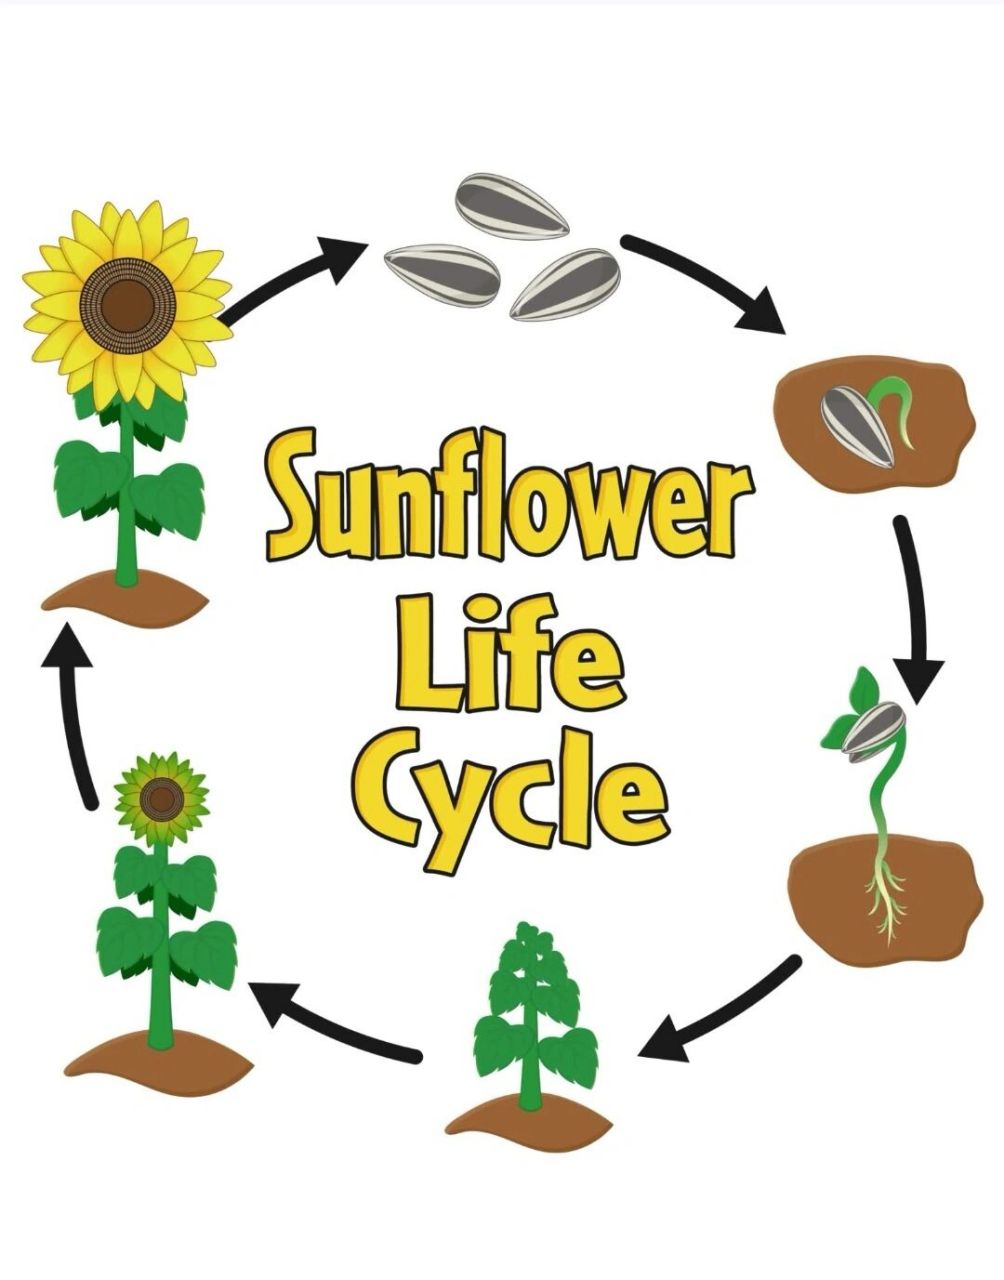 自然启蒙:太阳花(向日葵)生命周期 最近迷上了各种动植物的生命周期小